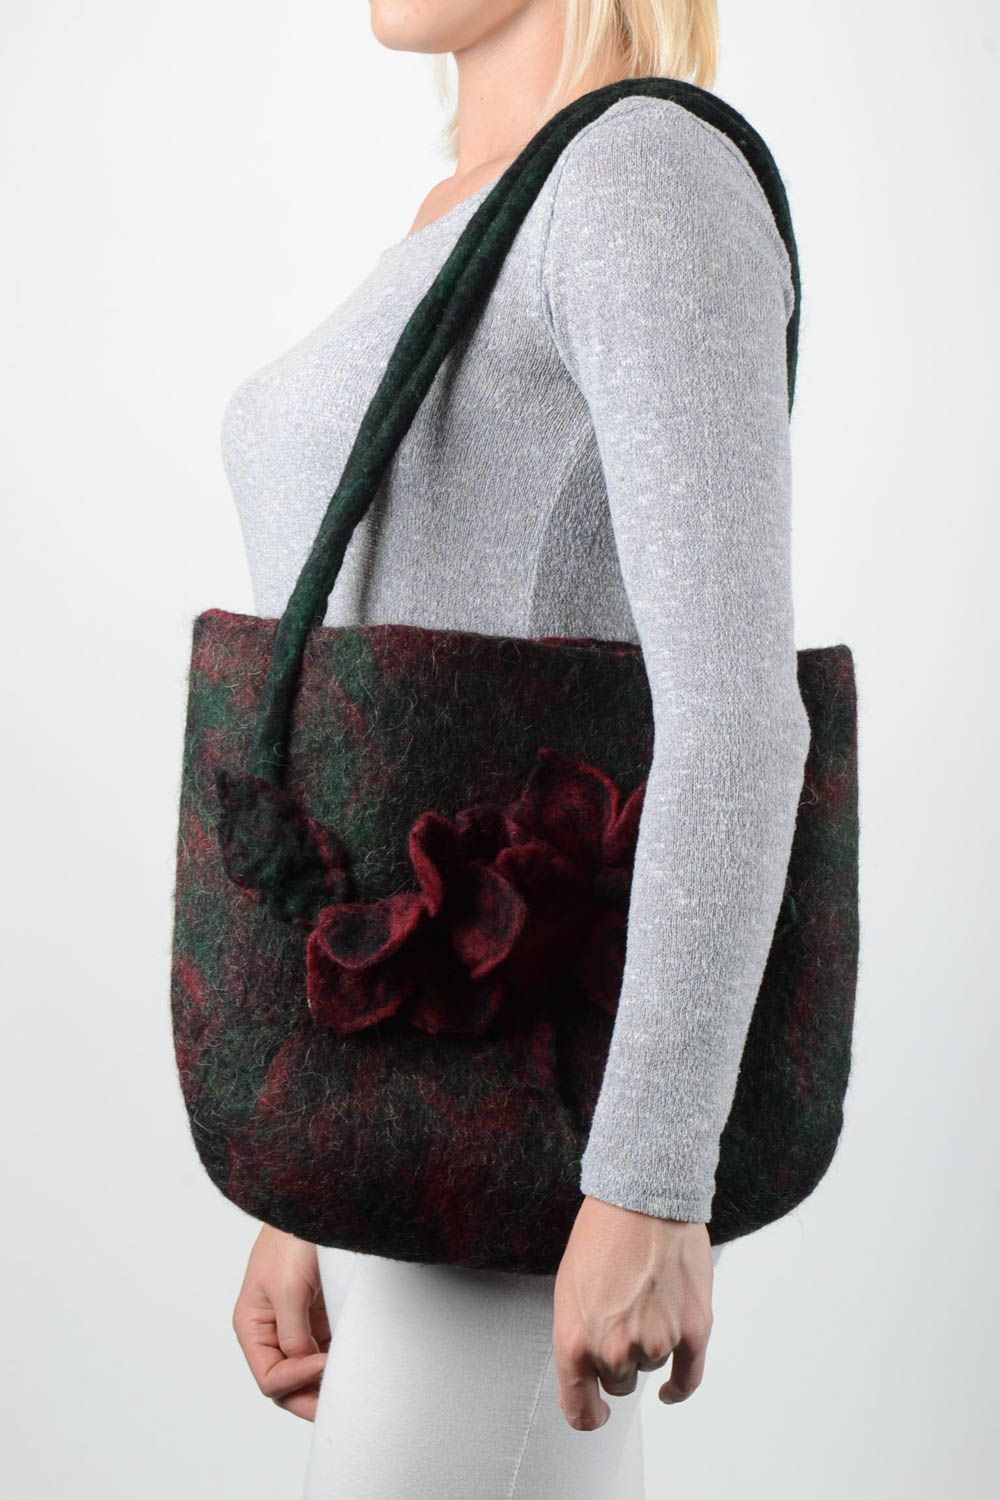 Сумка ручной работы женская сумка черрная на плечо из шерсти сумка валяние фото 1